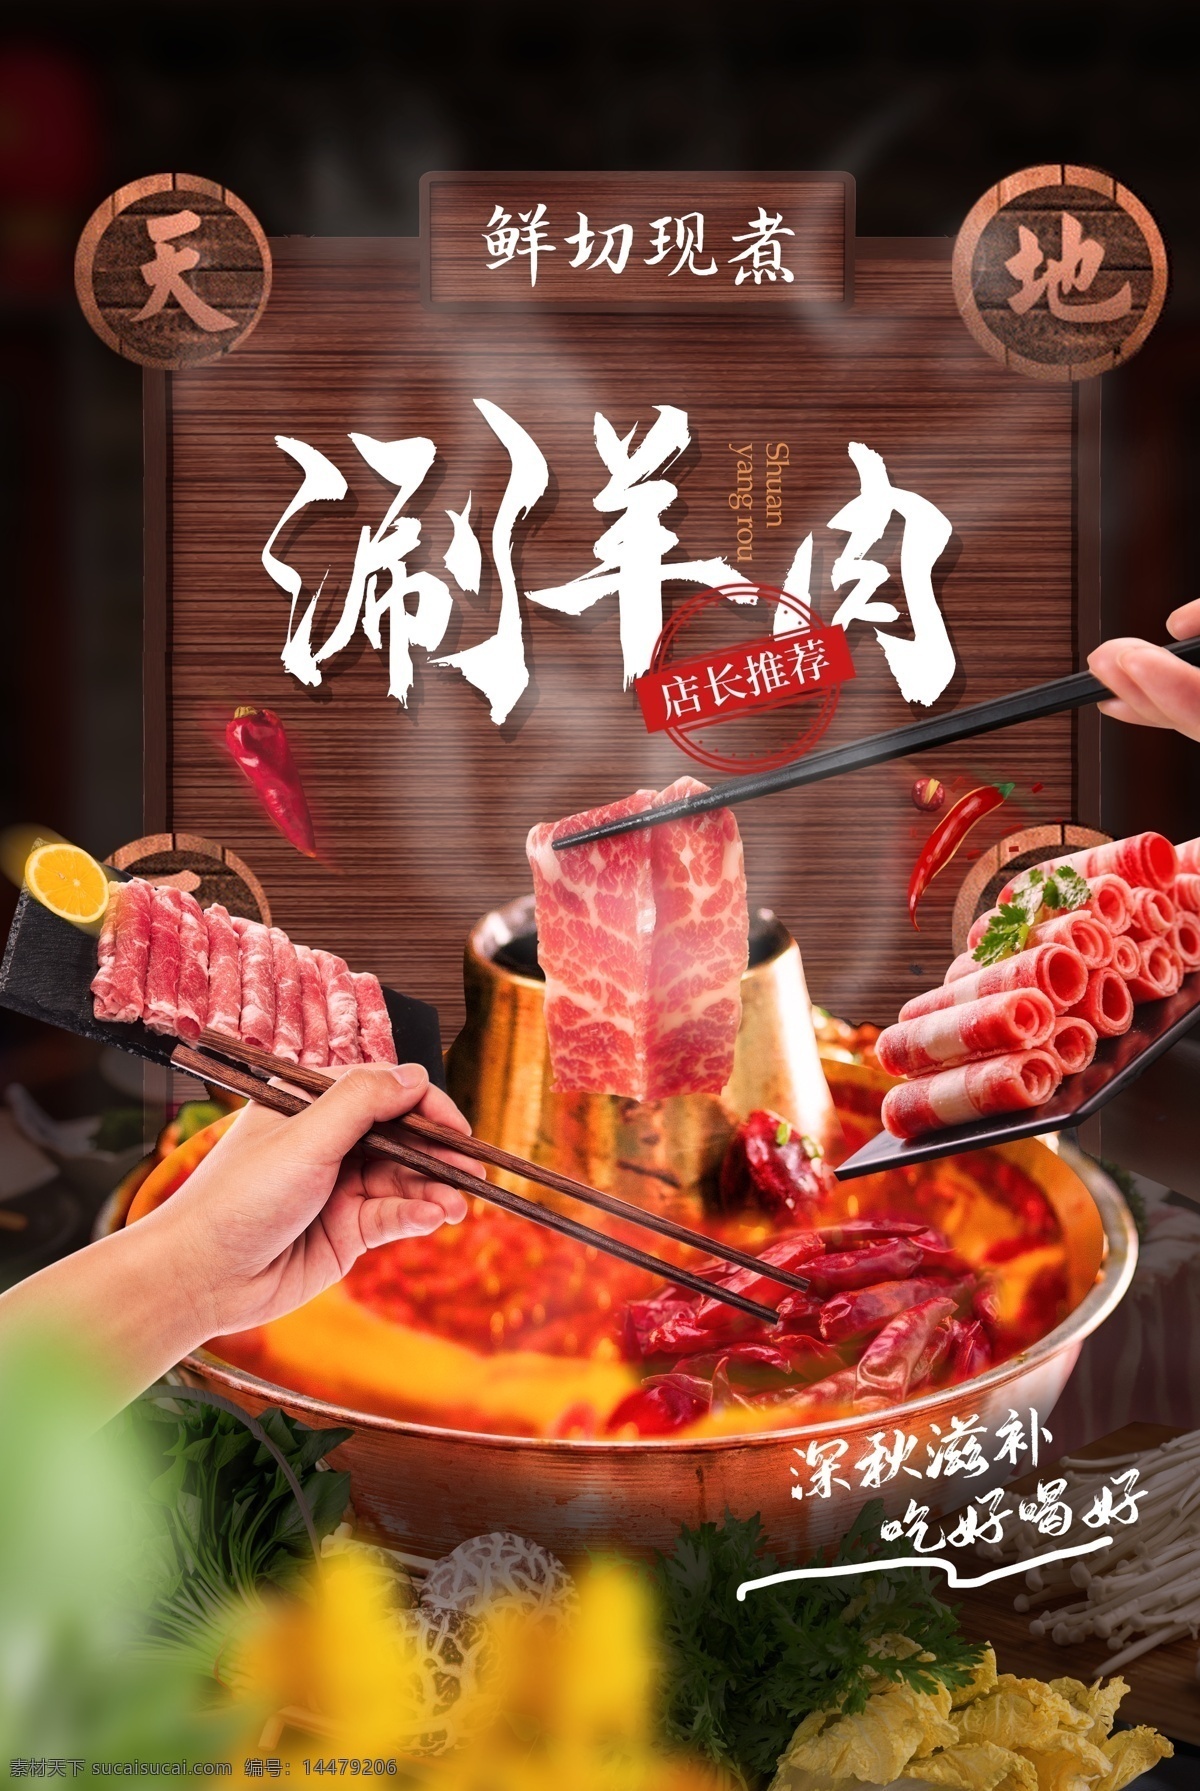 涮羊肉 美食 活动 宣传海报 素材图片 宣传 海报 餐饮美食 类